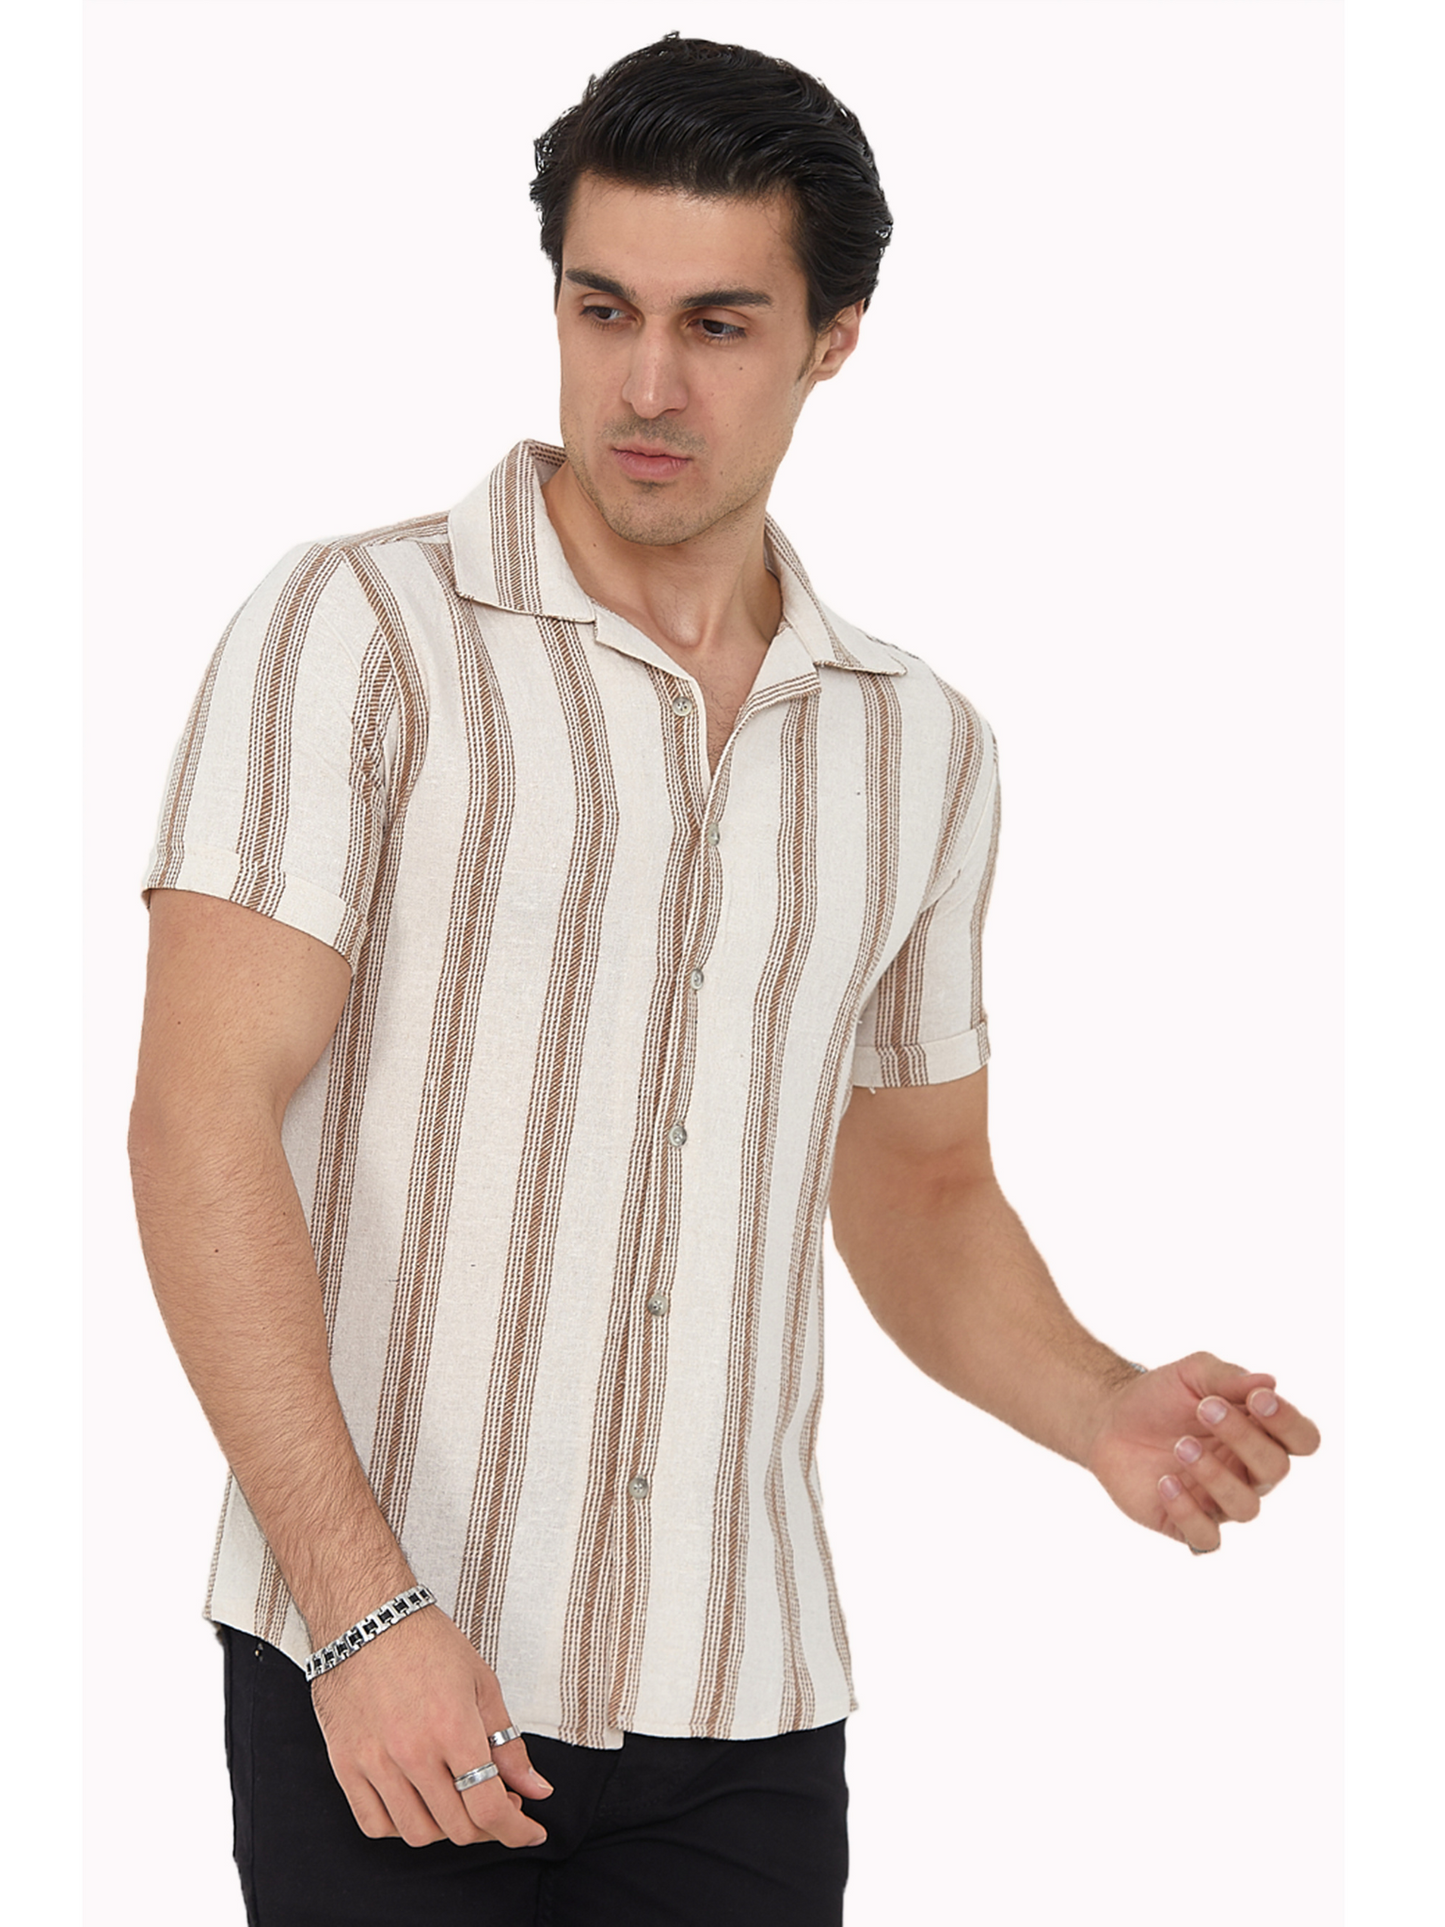 Herren Freizeit-Hemd Stretch Kurzarm Hemden